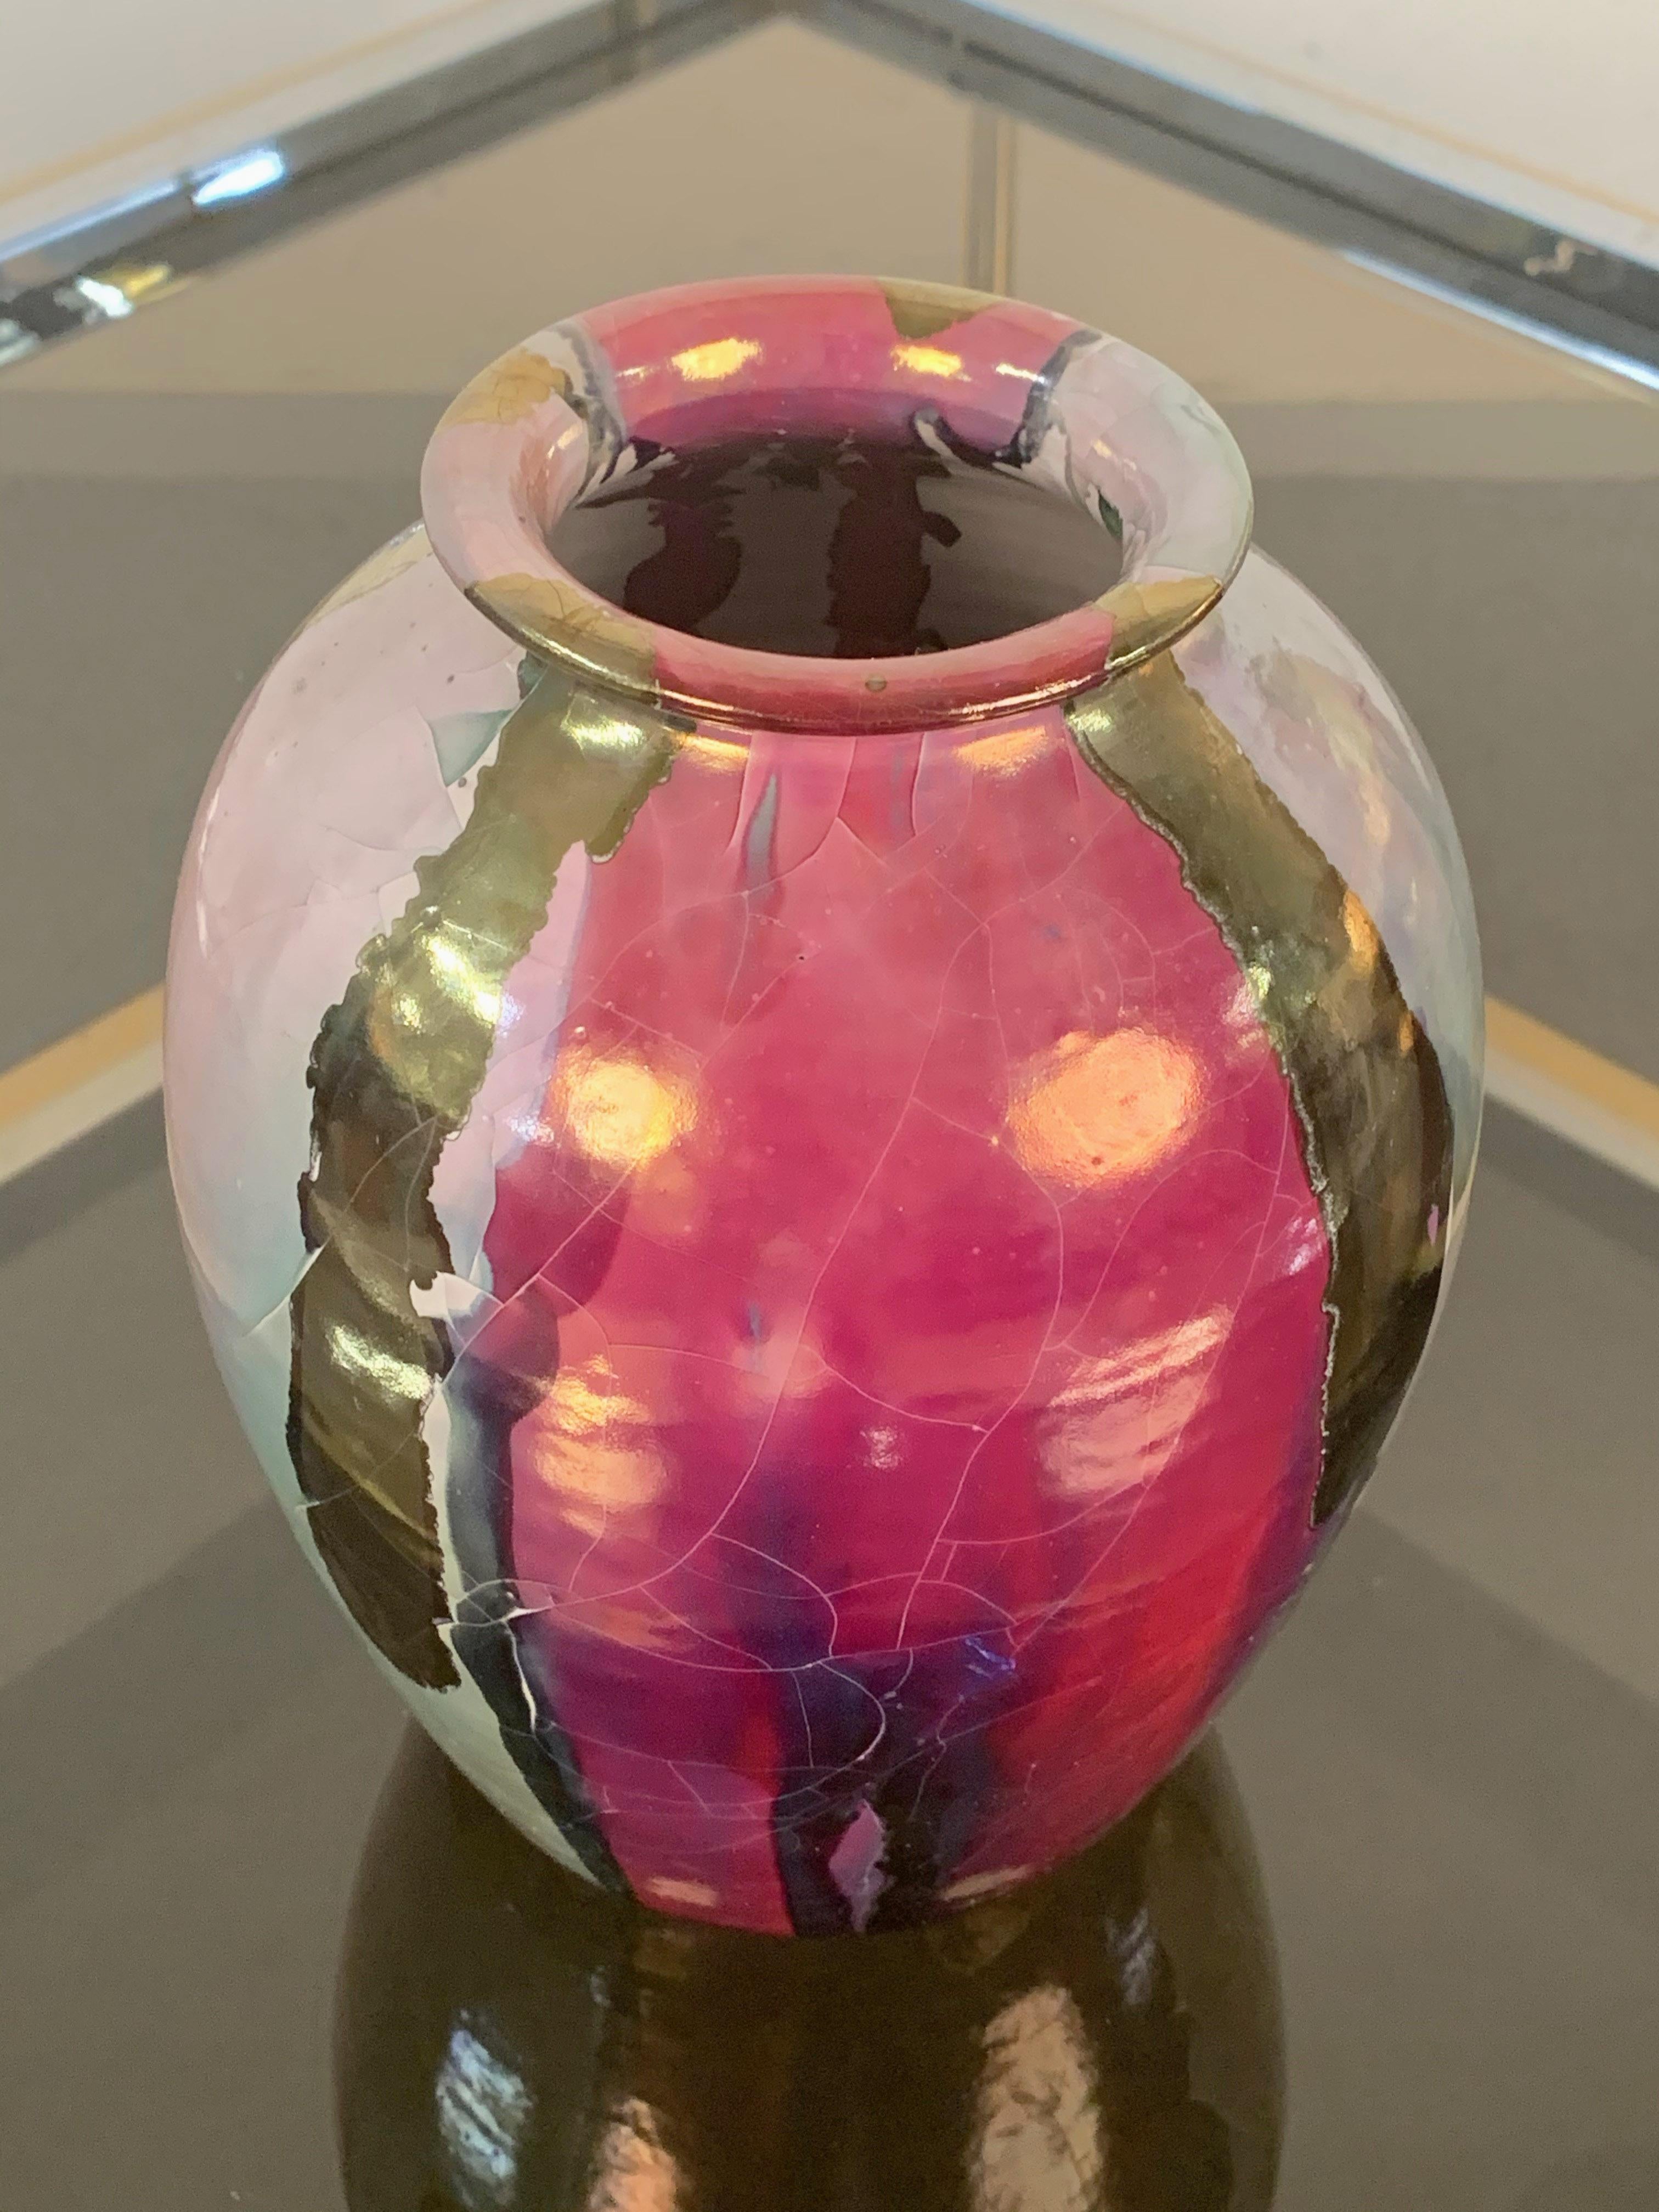 Ce vase en céramique polychrome est une merveilleuse production de Claudio Pulli, l'un des plus grands artistes sardes du XXe siècle.

Le vase a été produit pour I.S.O.L.A. et est réalisé en céramique émaillée, colorée avec du vernis à ongles aux